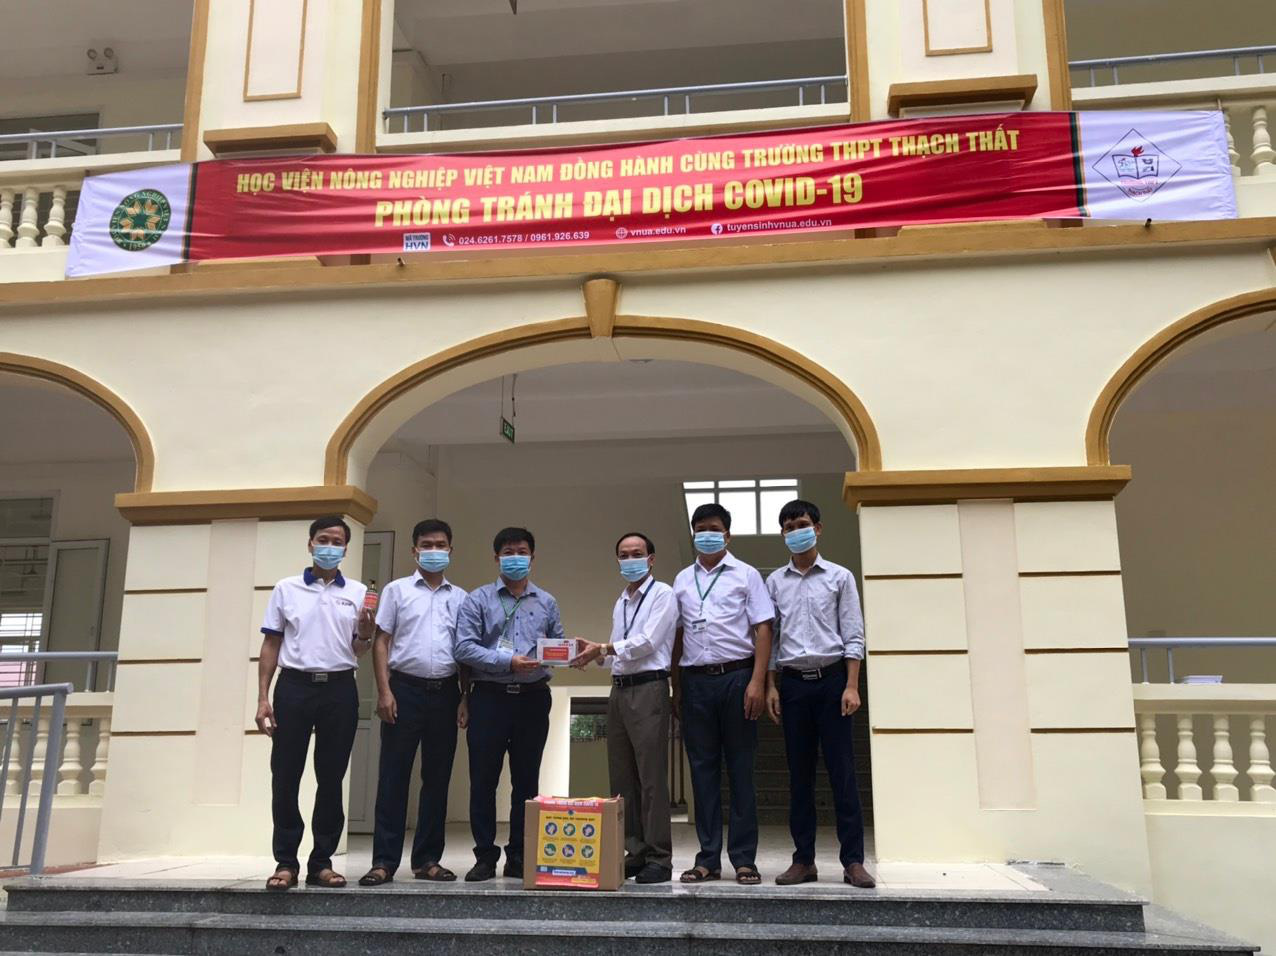 Thi tốt nghiệp THPT 2020, Học viện Nông nghiệp Việt Nam tặng 500 hộp khẩu trang, 500 chai gel rửa tay cho các sĩ tử - Ảnh 1.